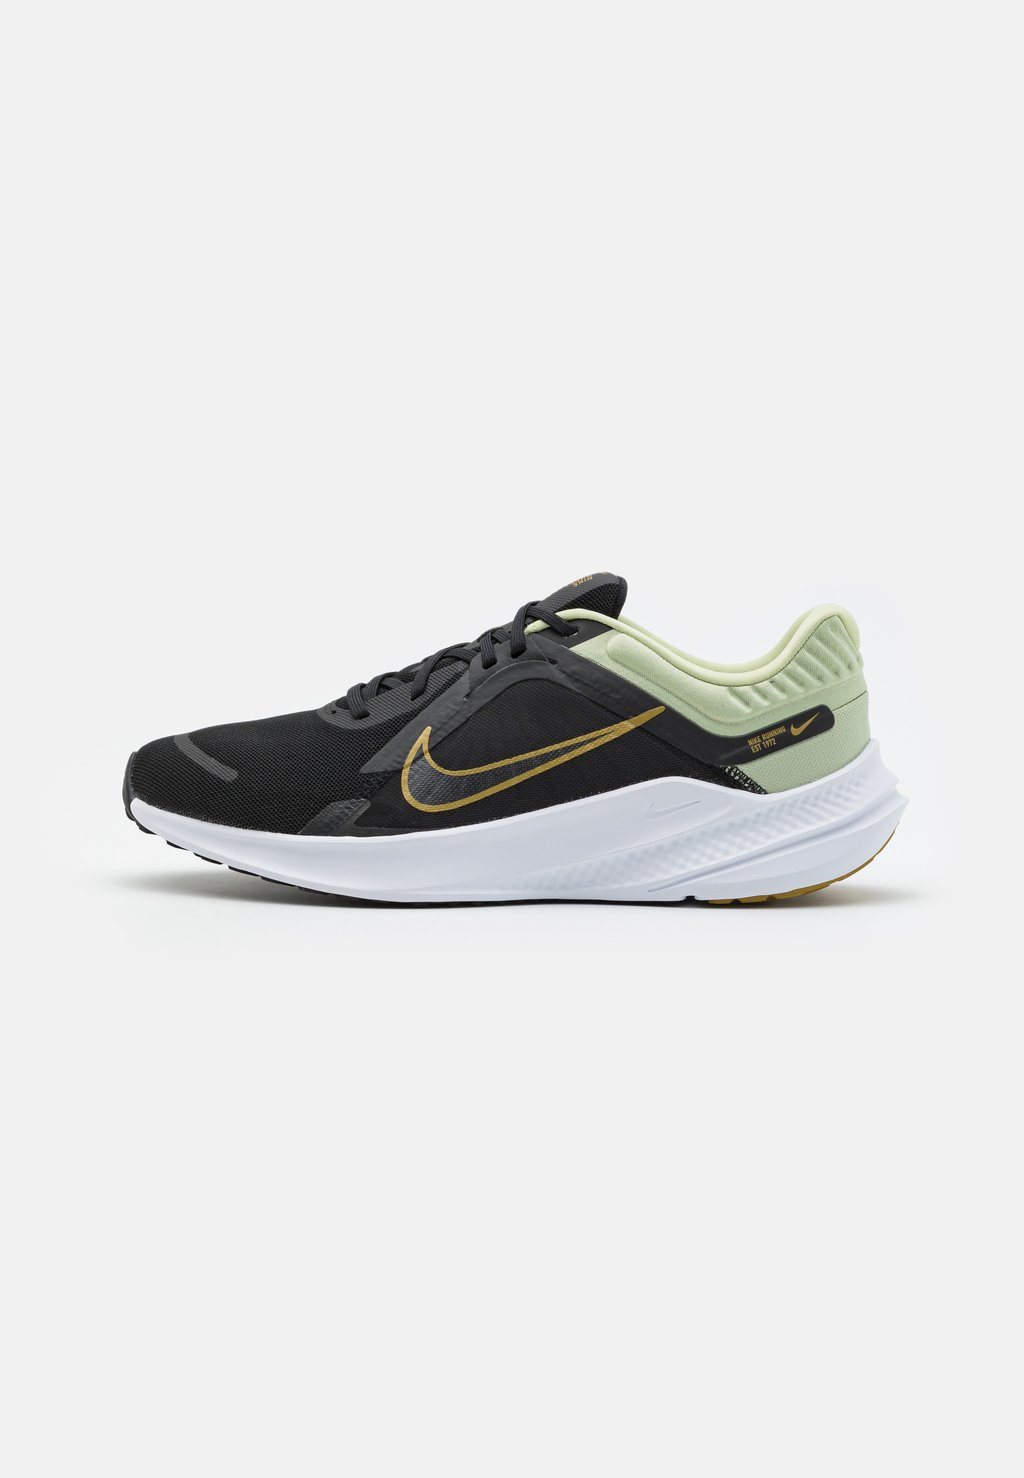 Нейтральные кроссовки QUEST 5 Nike, цвет olive aura/bronzine/black/white